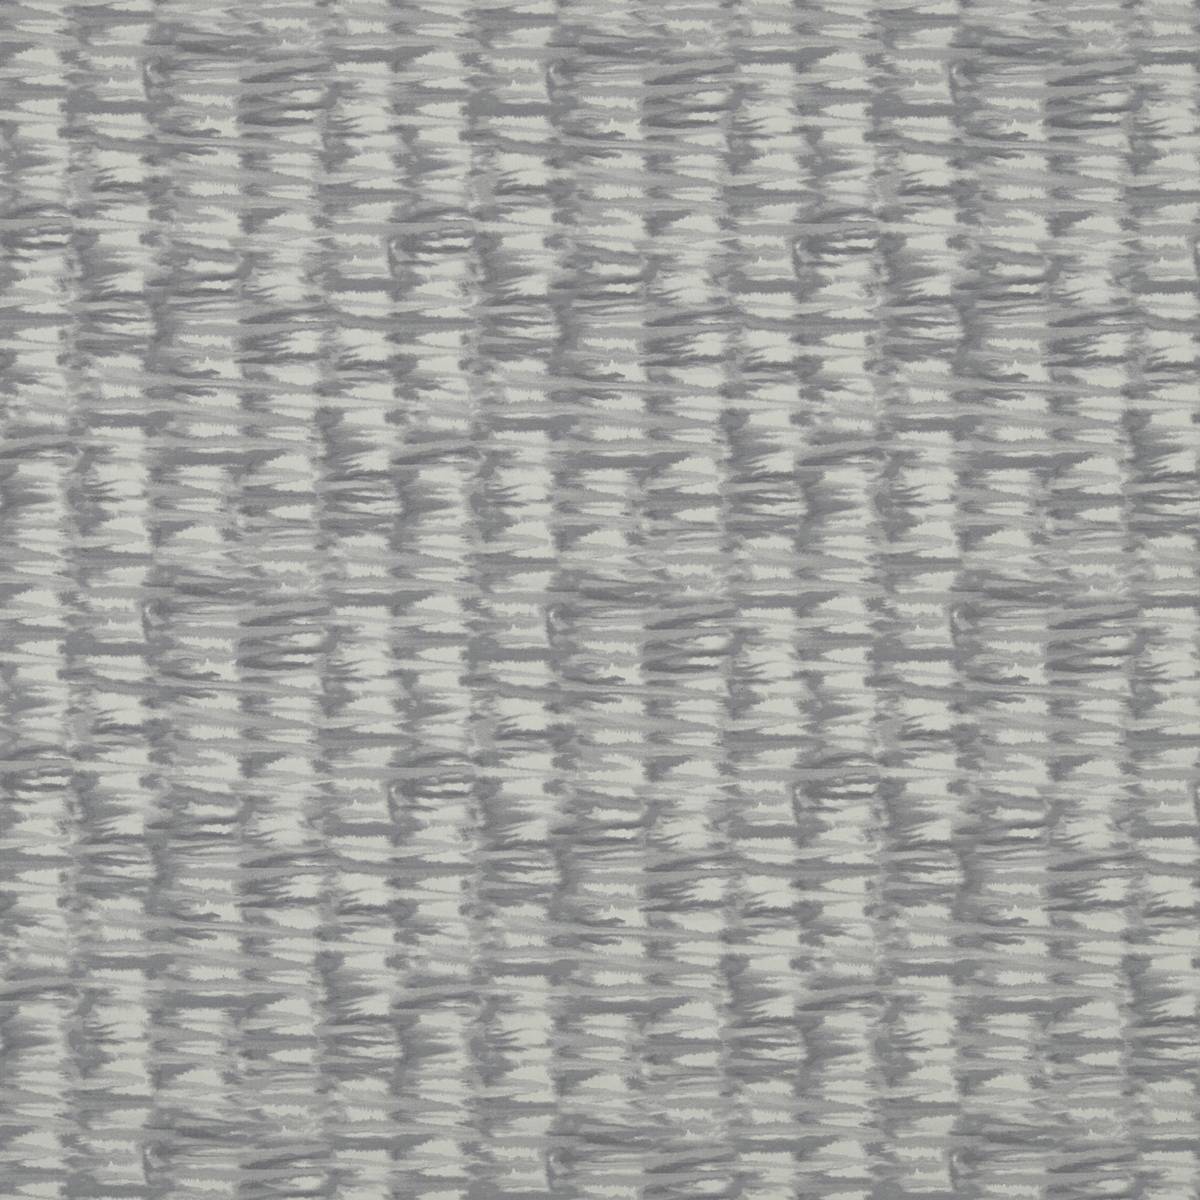 Mizu Truffle Fabric by Harlequin